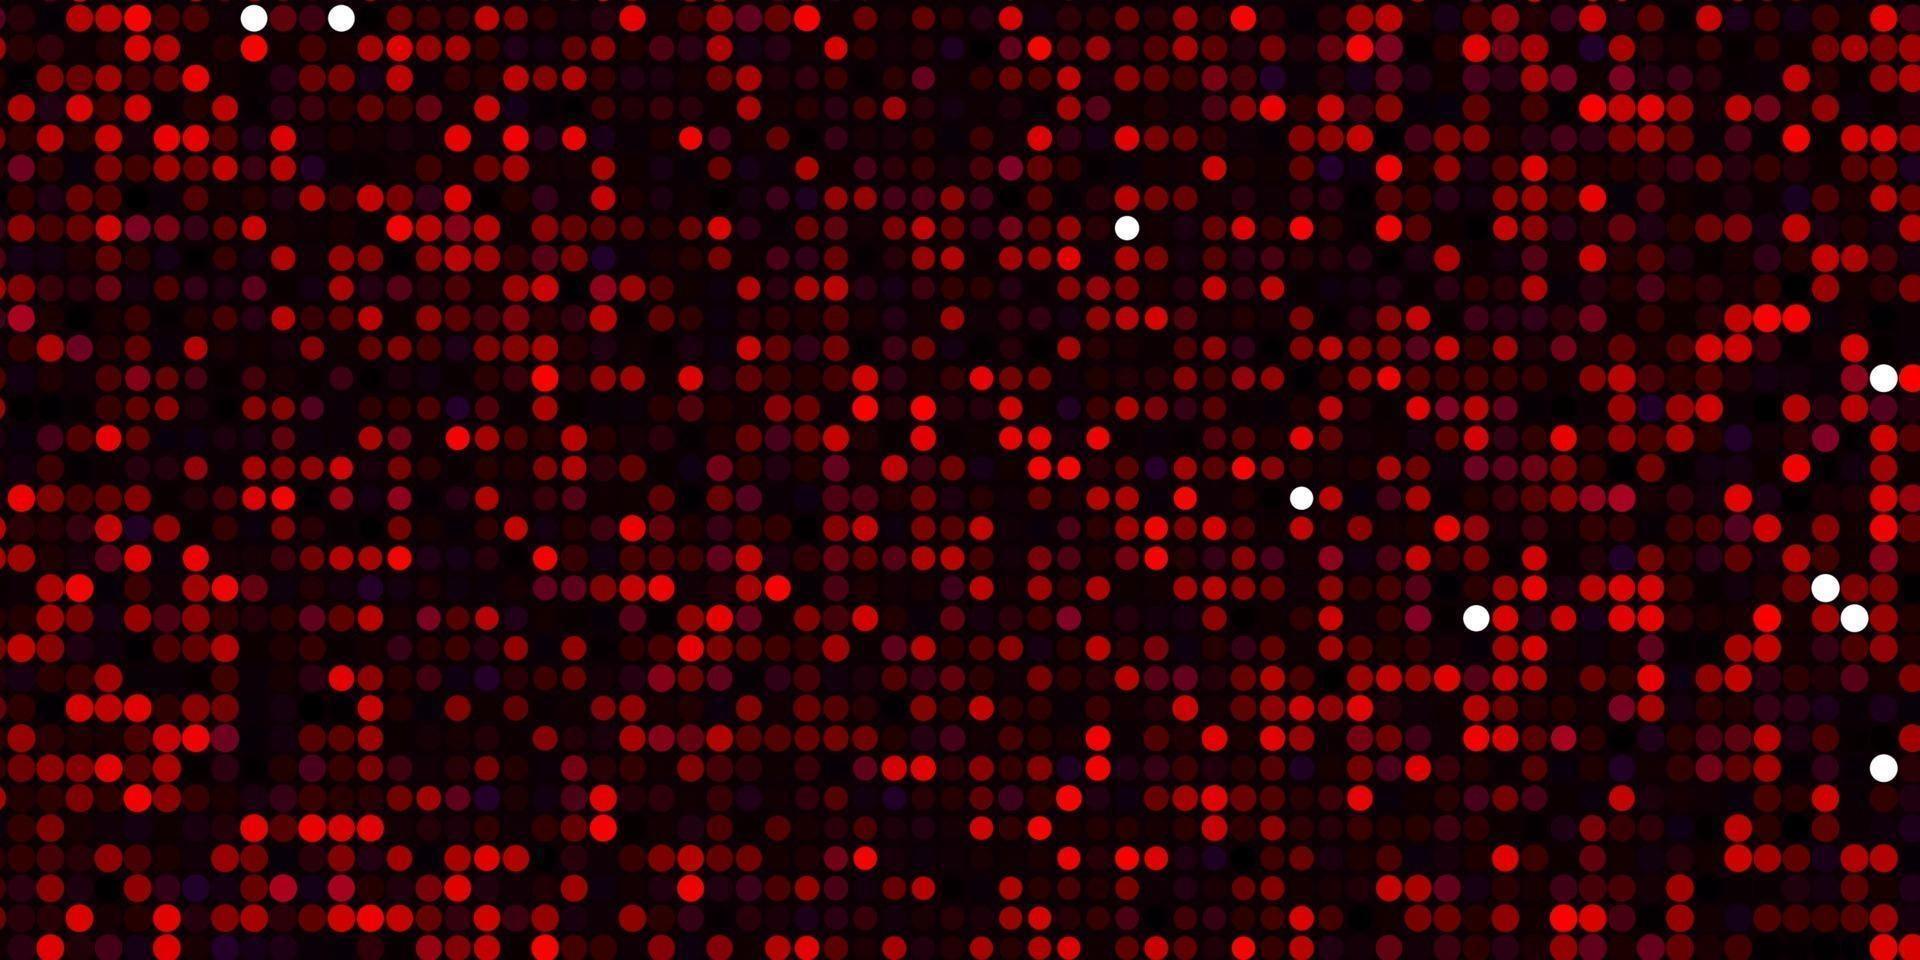 mörkrosa, röd vektormall med cirklar. vektor